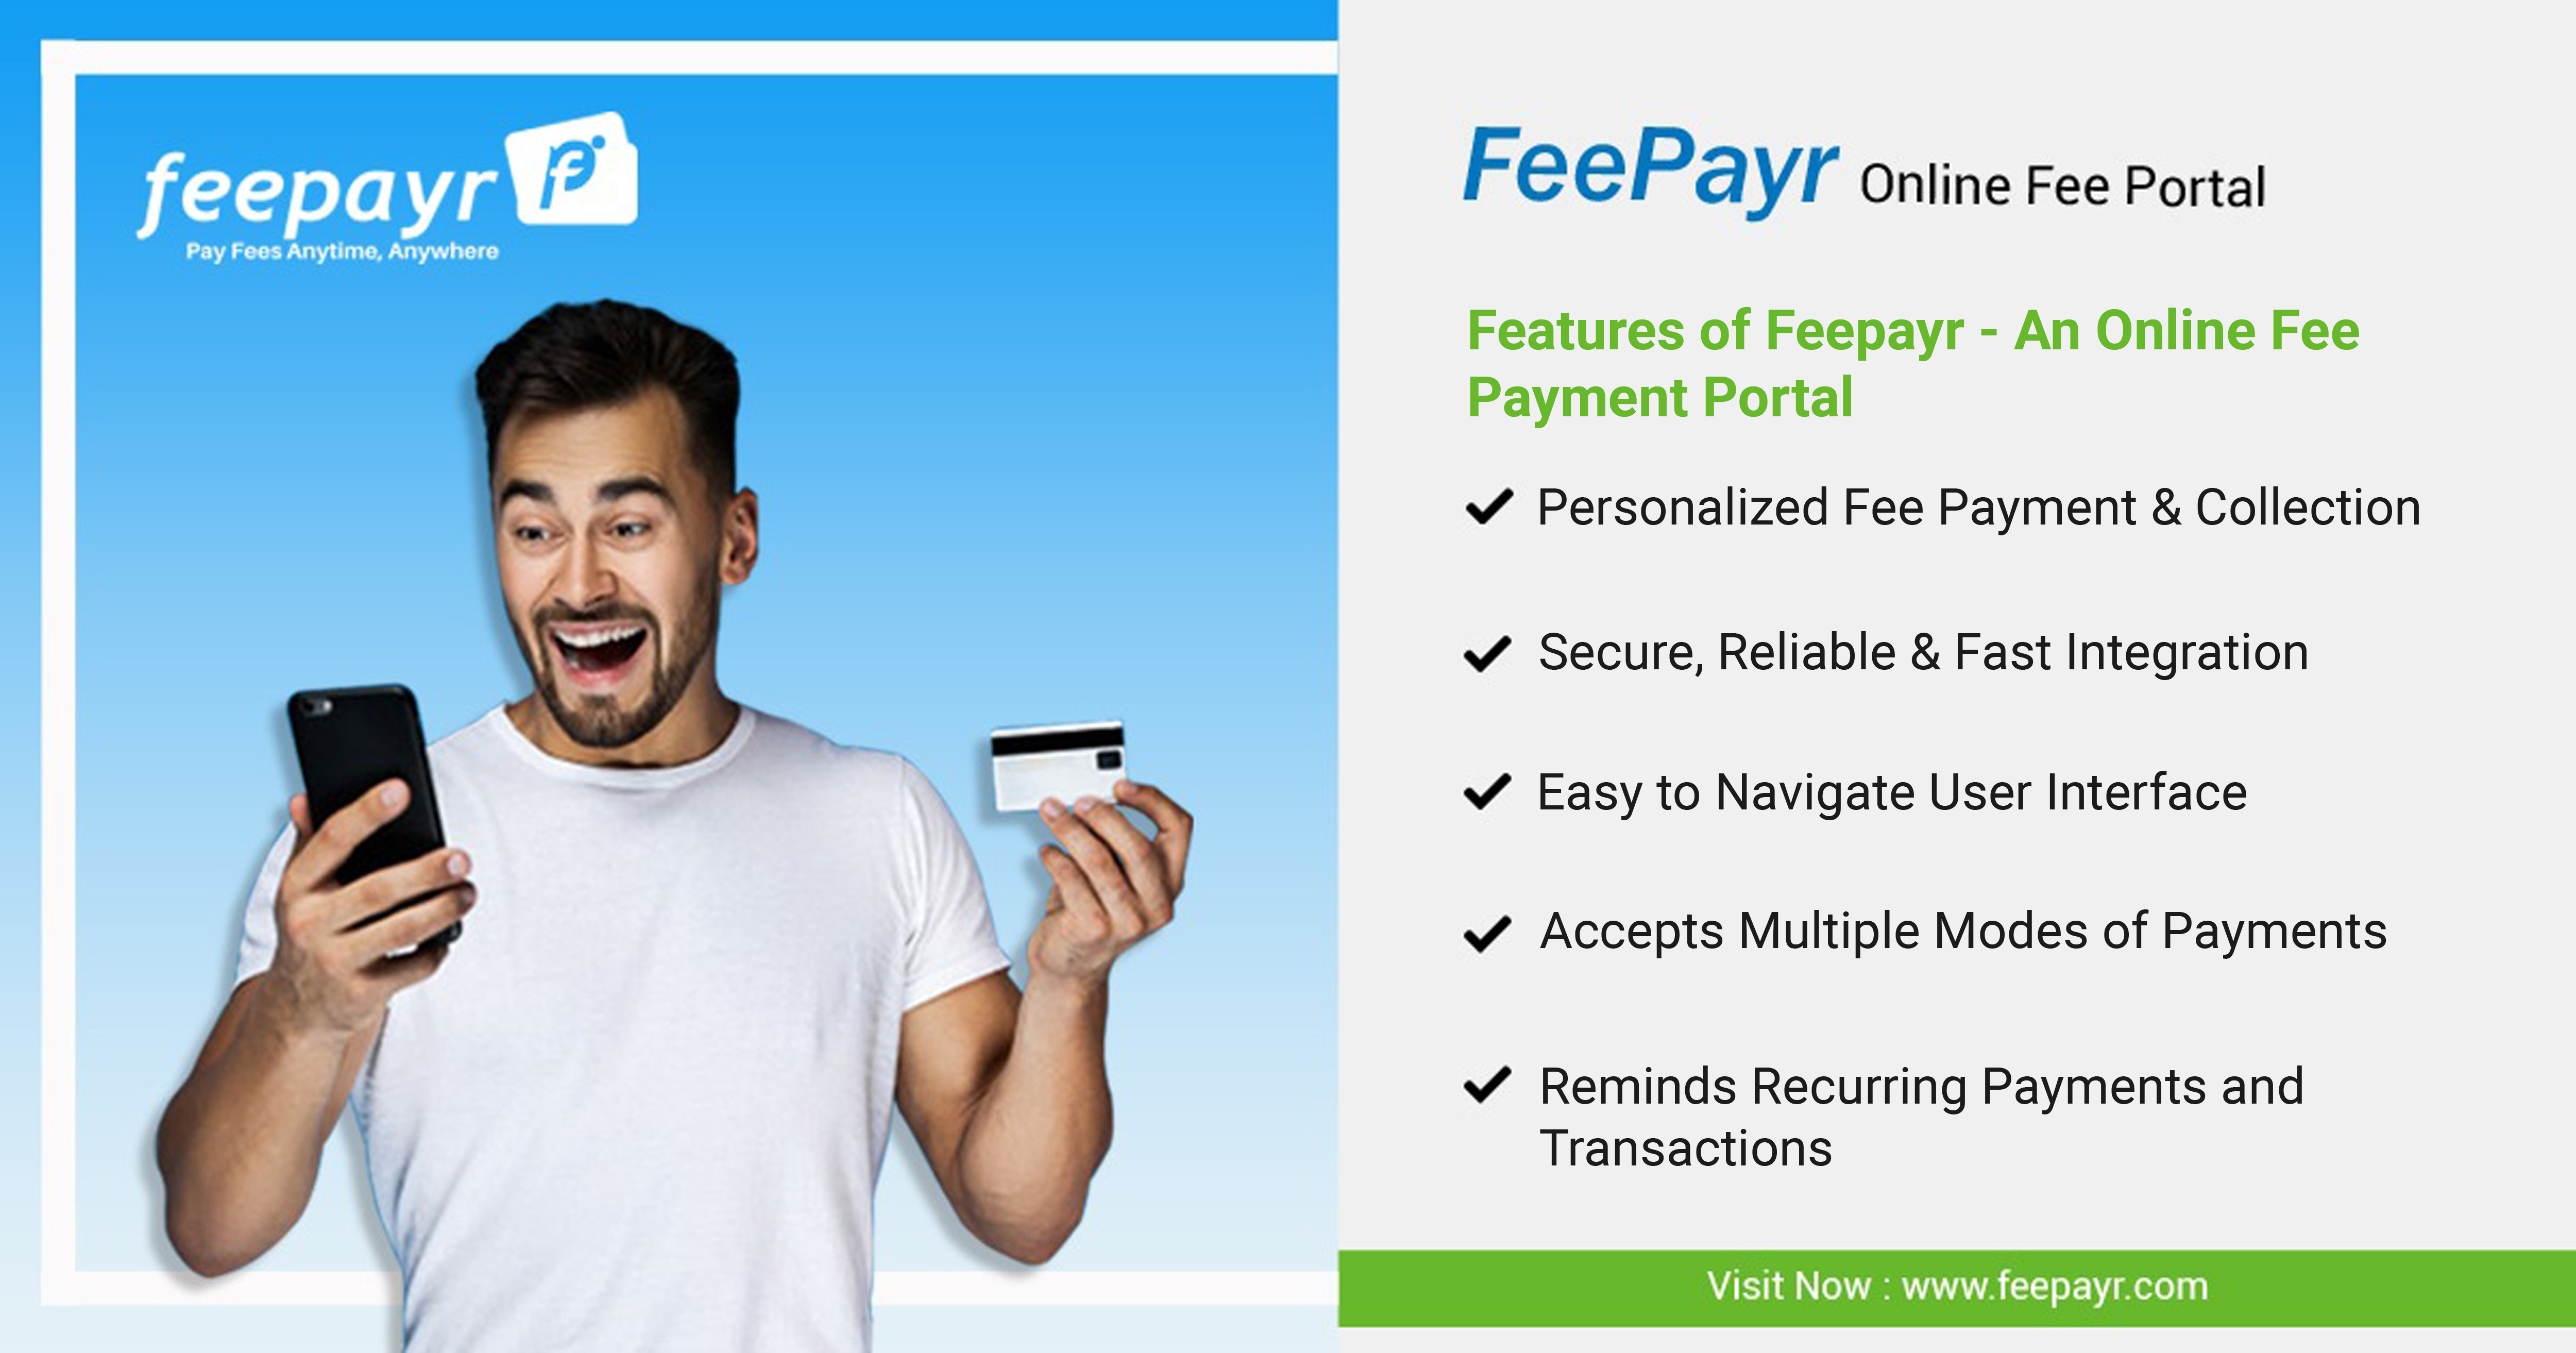 Feepayr Online Fee Portal